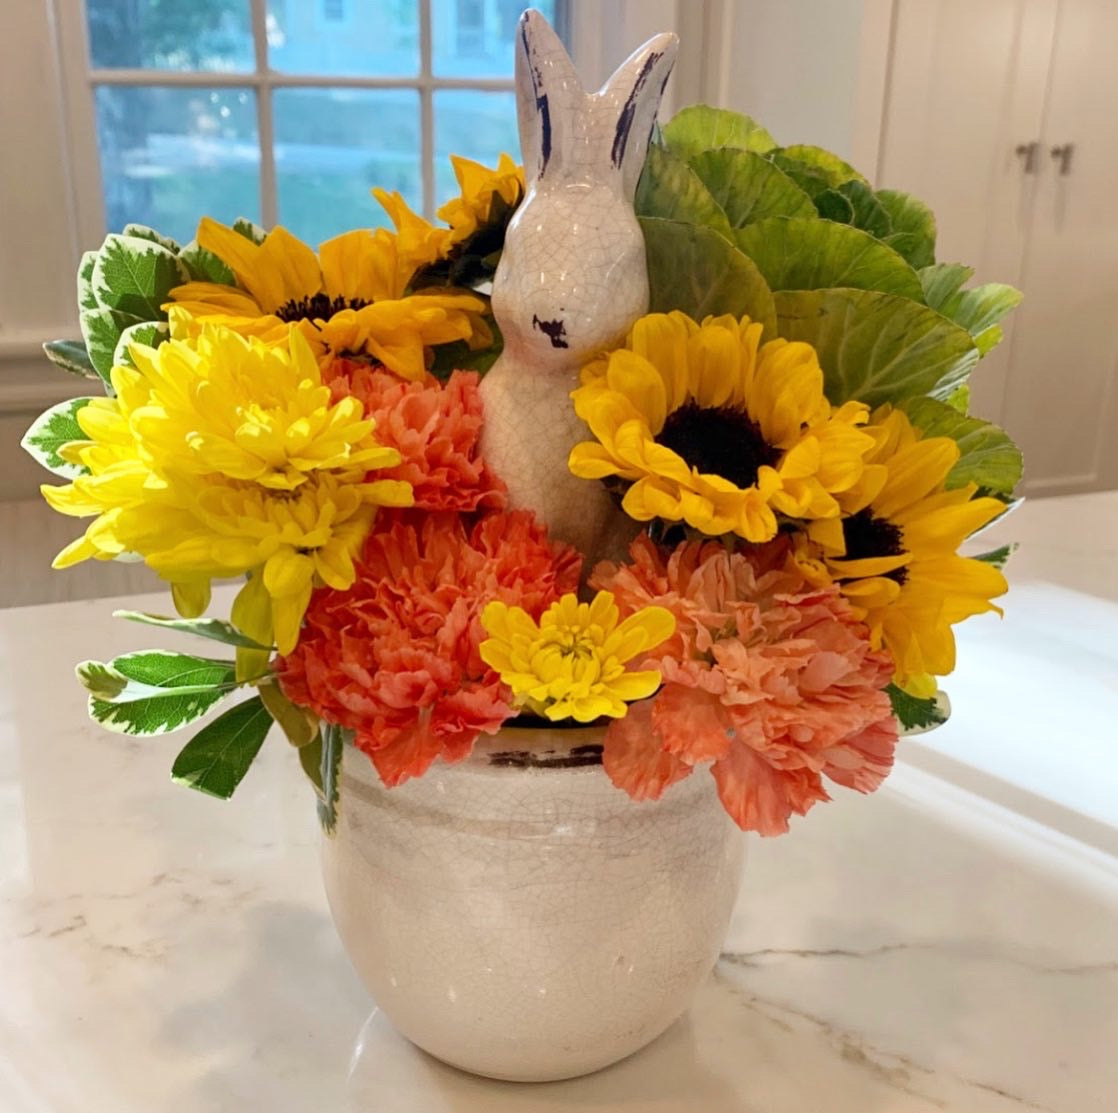 Bunny Pot Vase